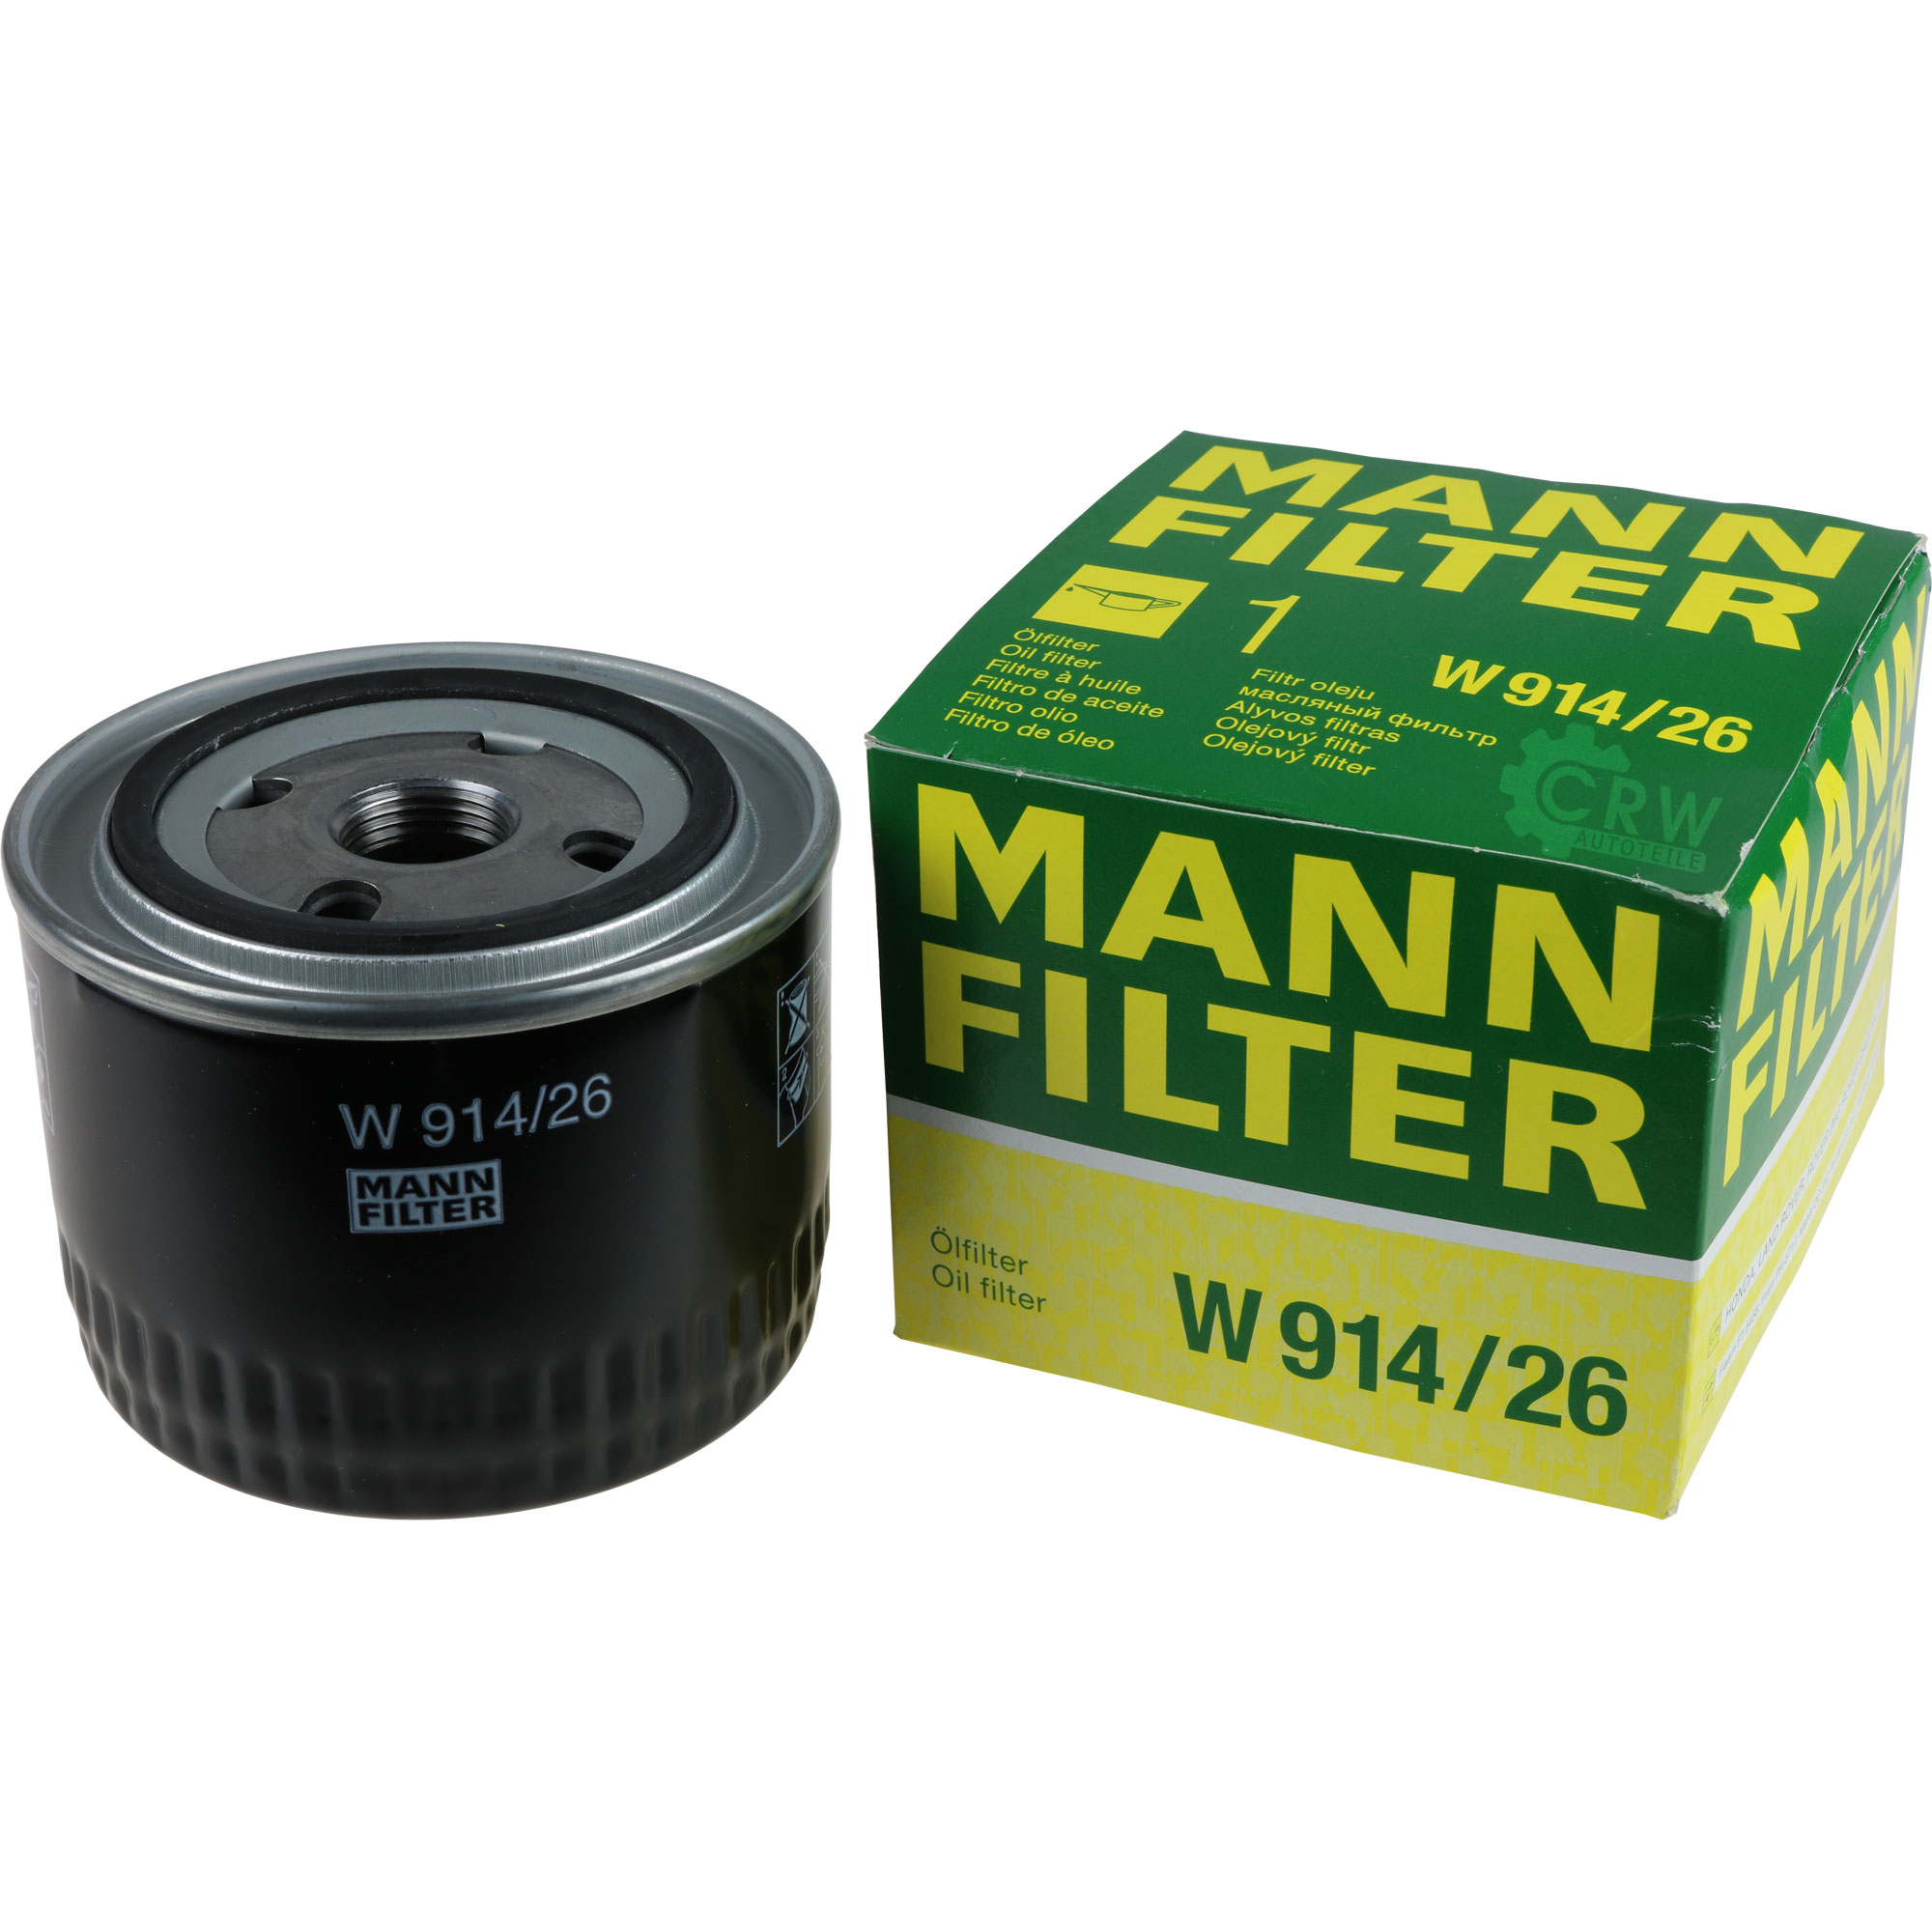 MANN-FILTER Ölfilter W 914/26 Oil Filter